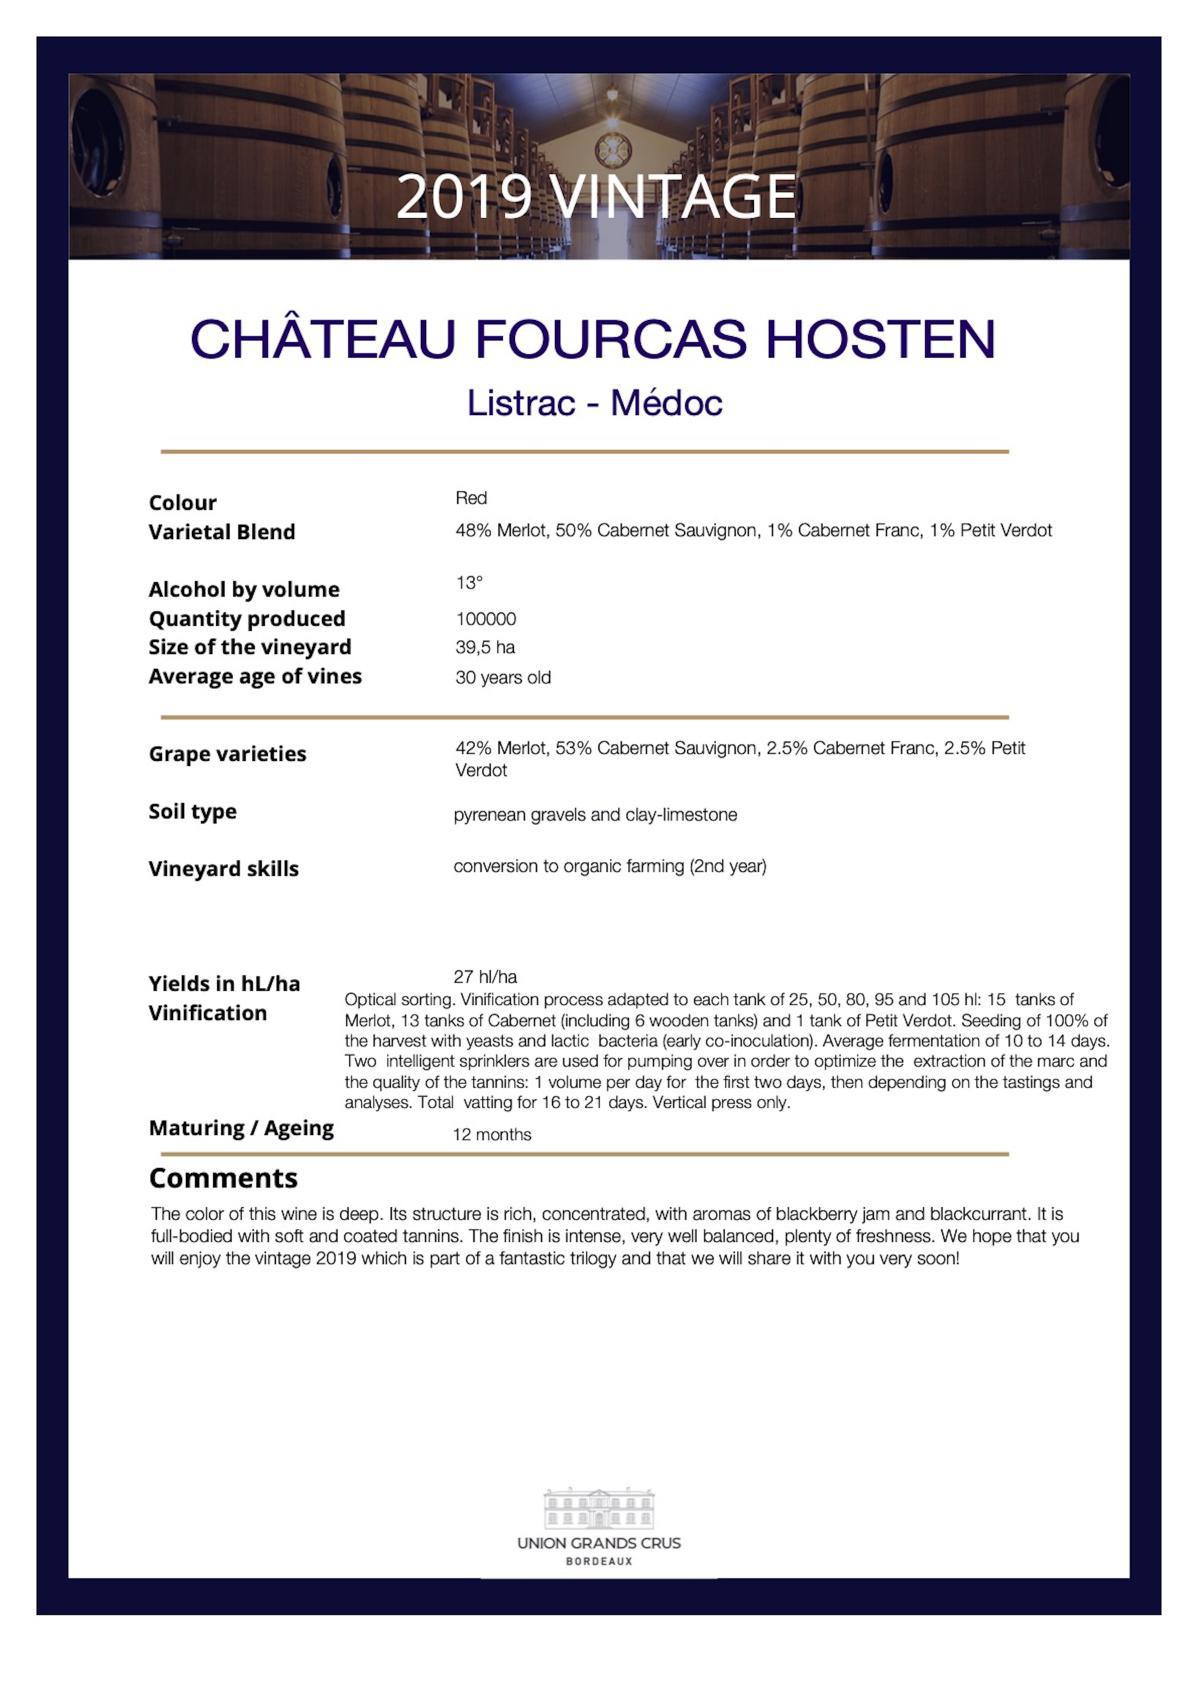 Château Fourcas Hosten